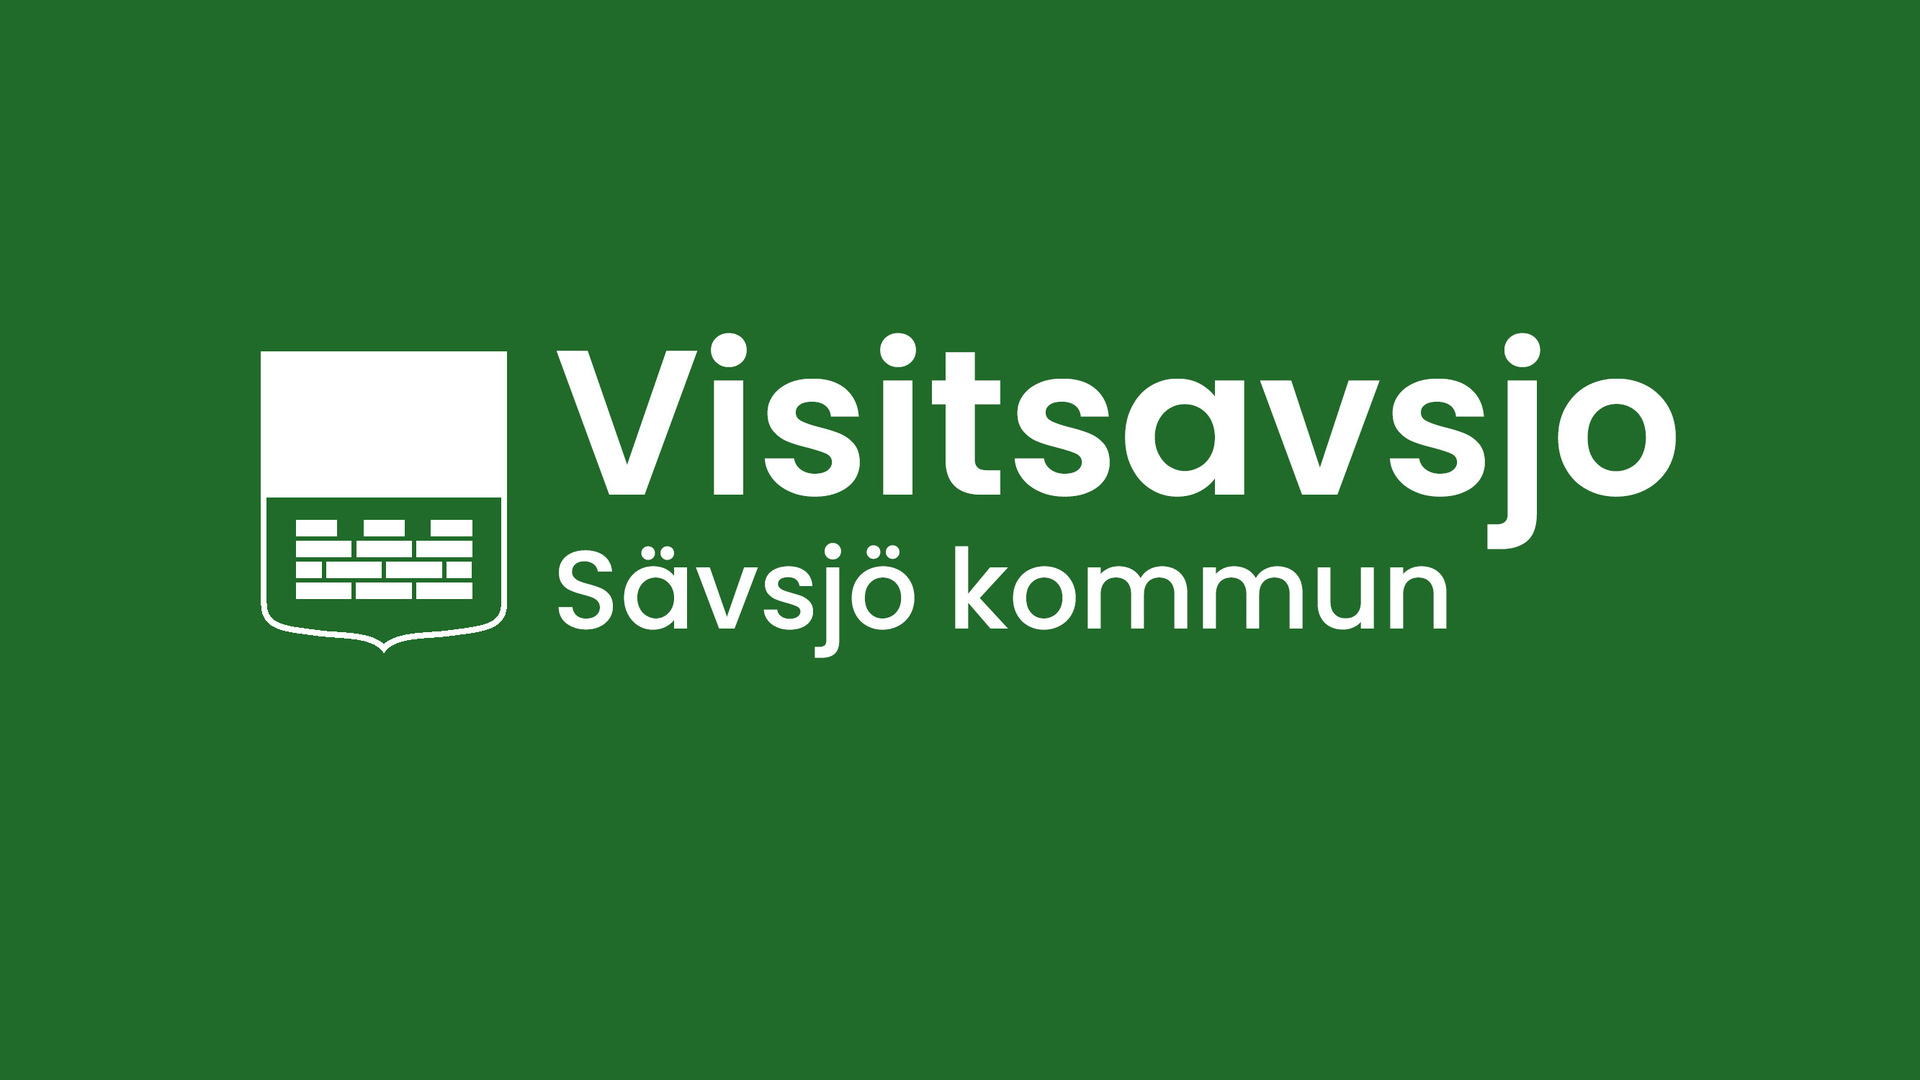 Logotyp för Visitsavsjo på grön bakgrund.